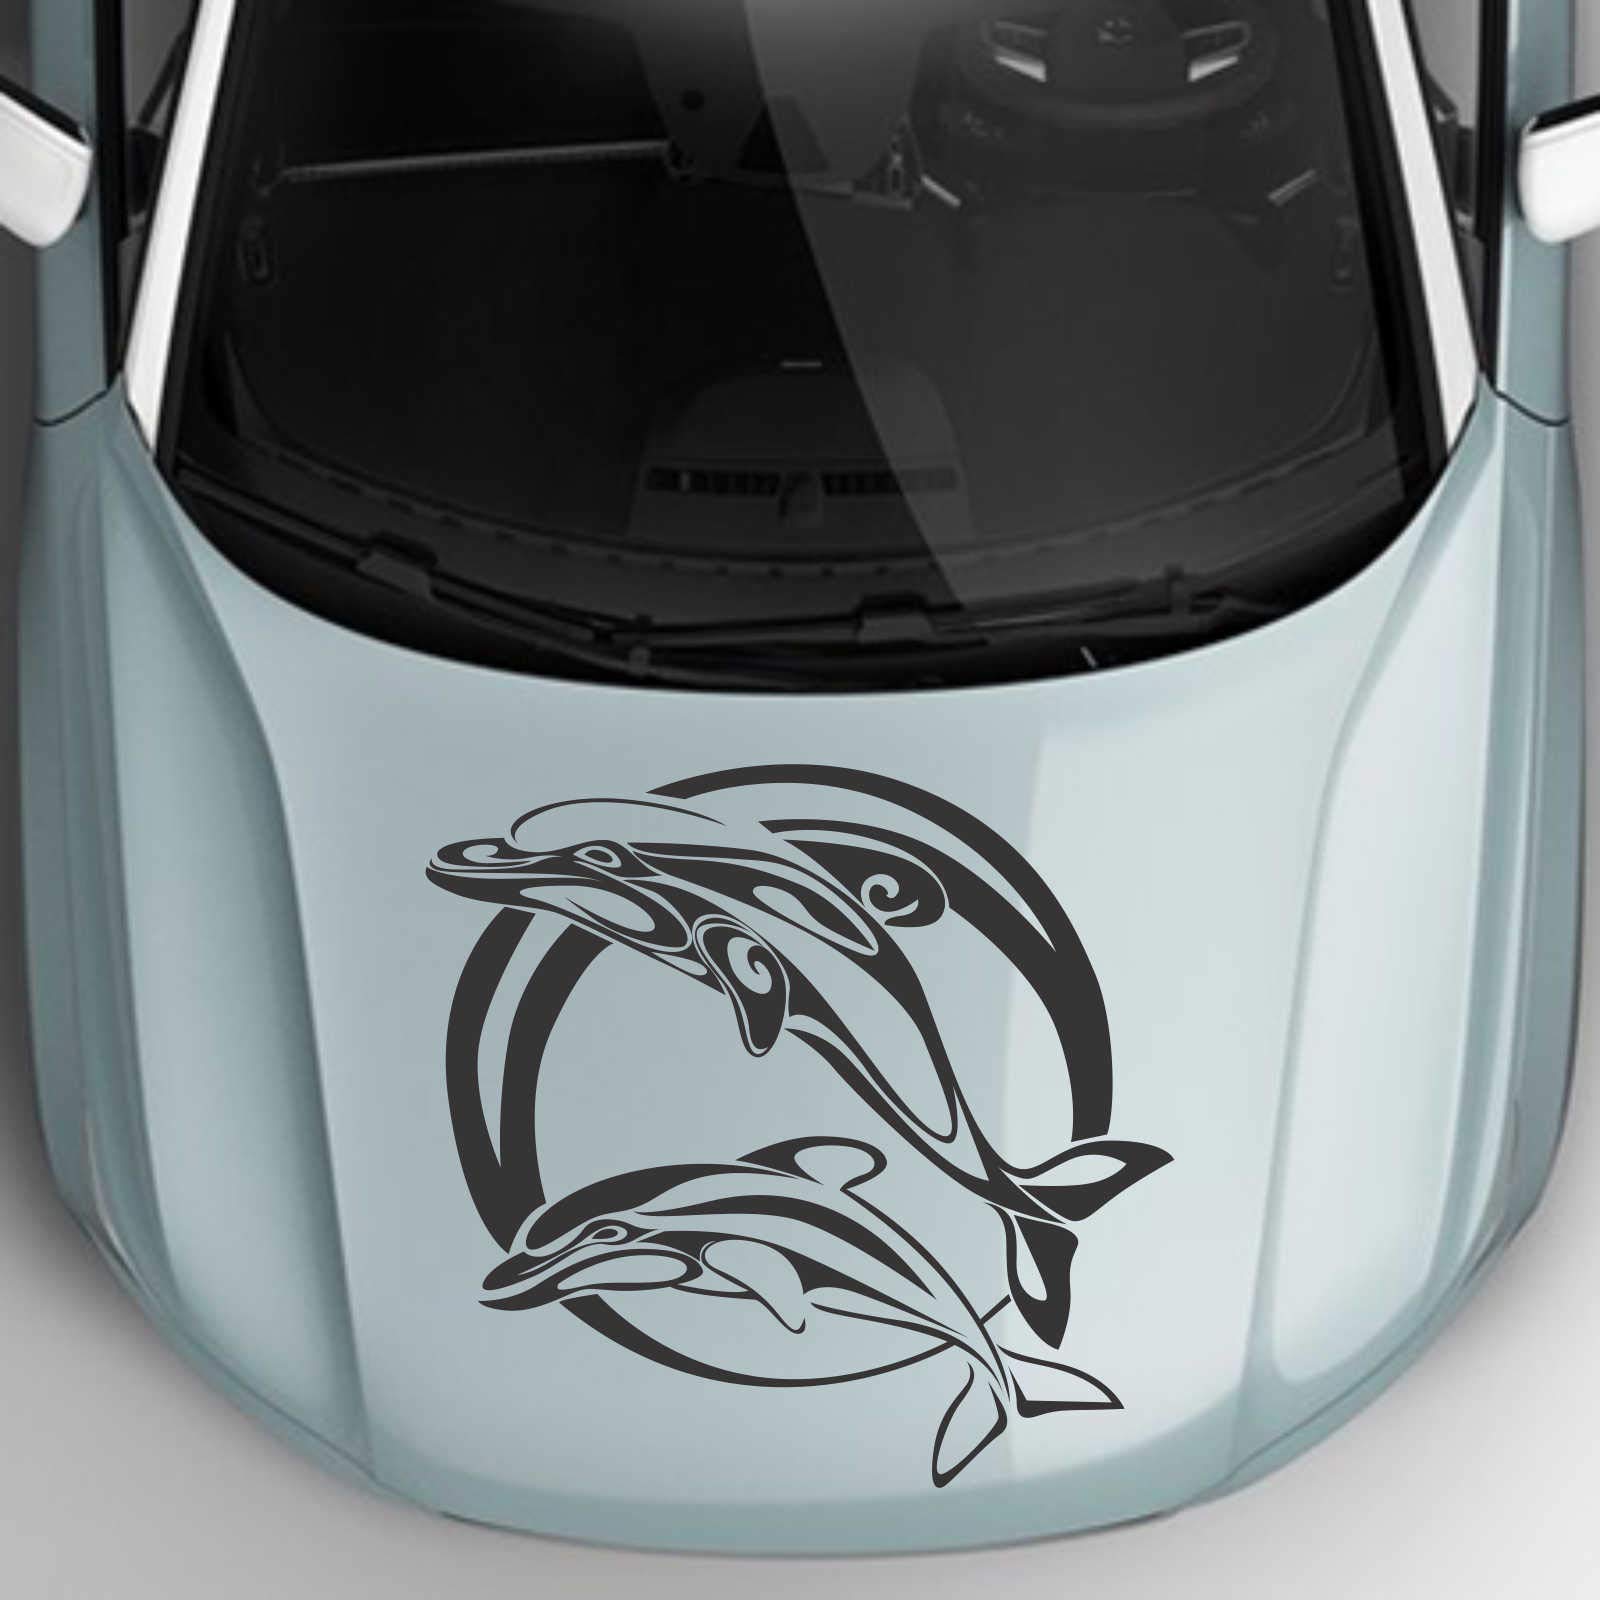 INDIGOS UG Aufkleber - Autoaufkleber Jumping Delfine 40cm x 39cm schwarz - Tuning Carystyling Heckscheibe Auto von INDIGOS UG